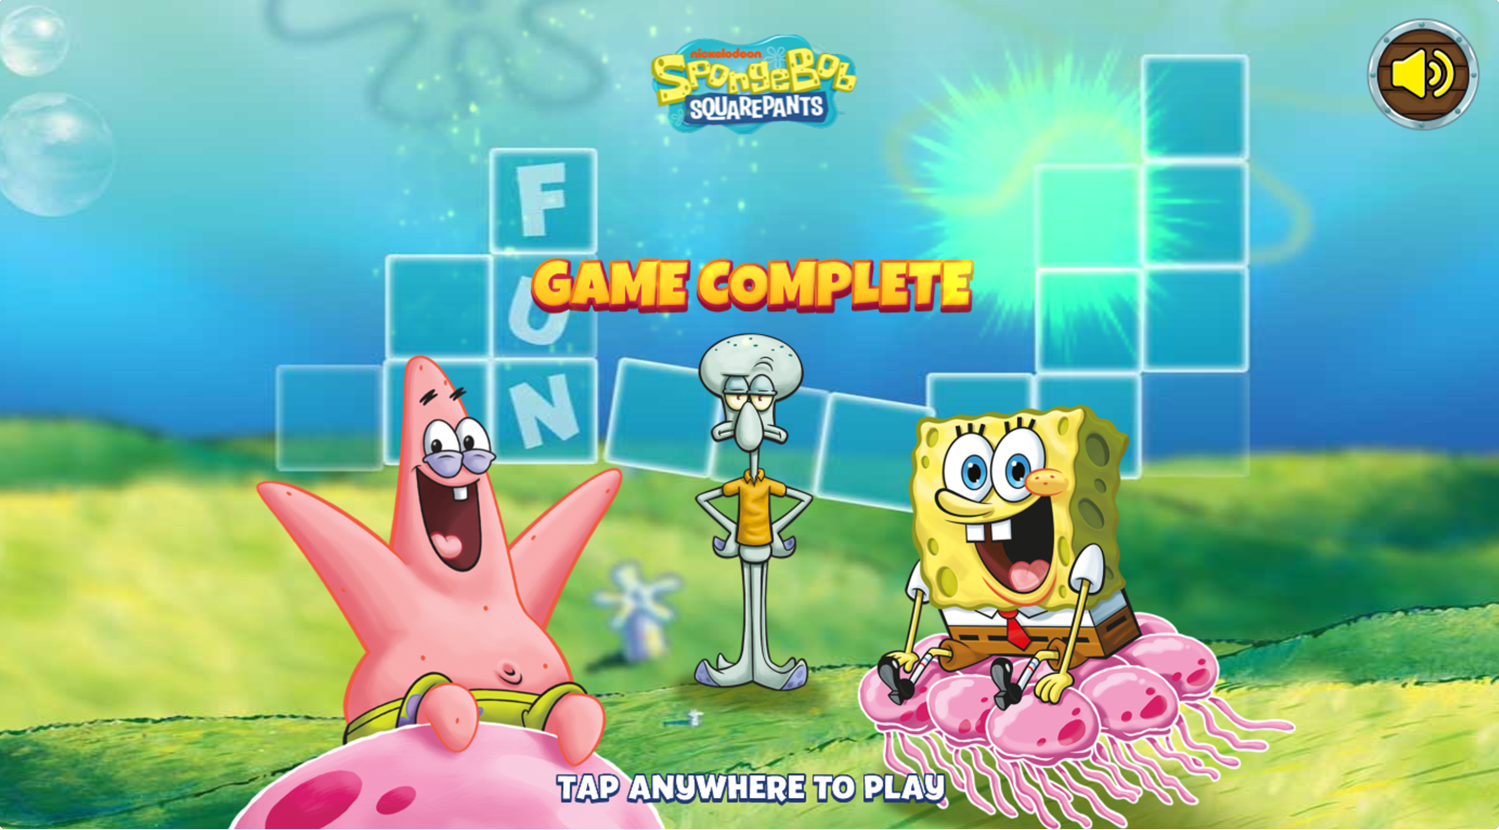 Spongebob Squarepants Word Blocks Game Complete Screenshot.